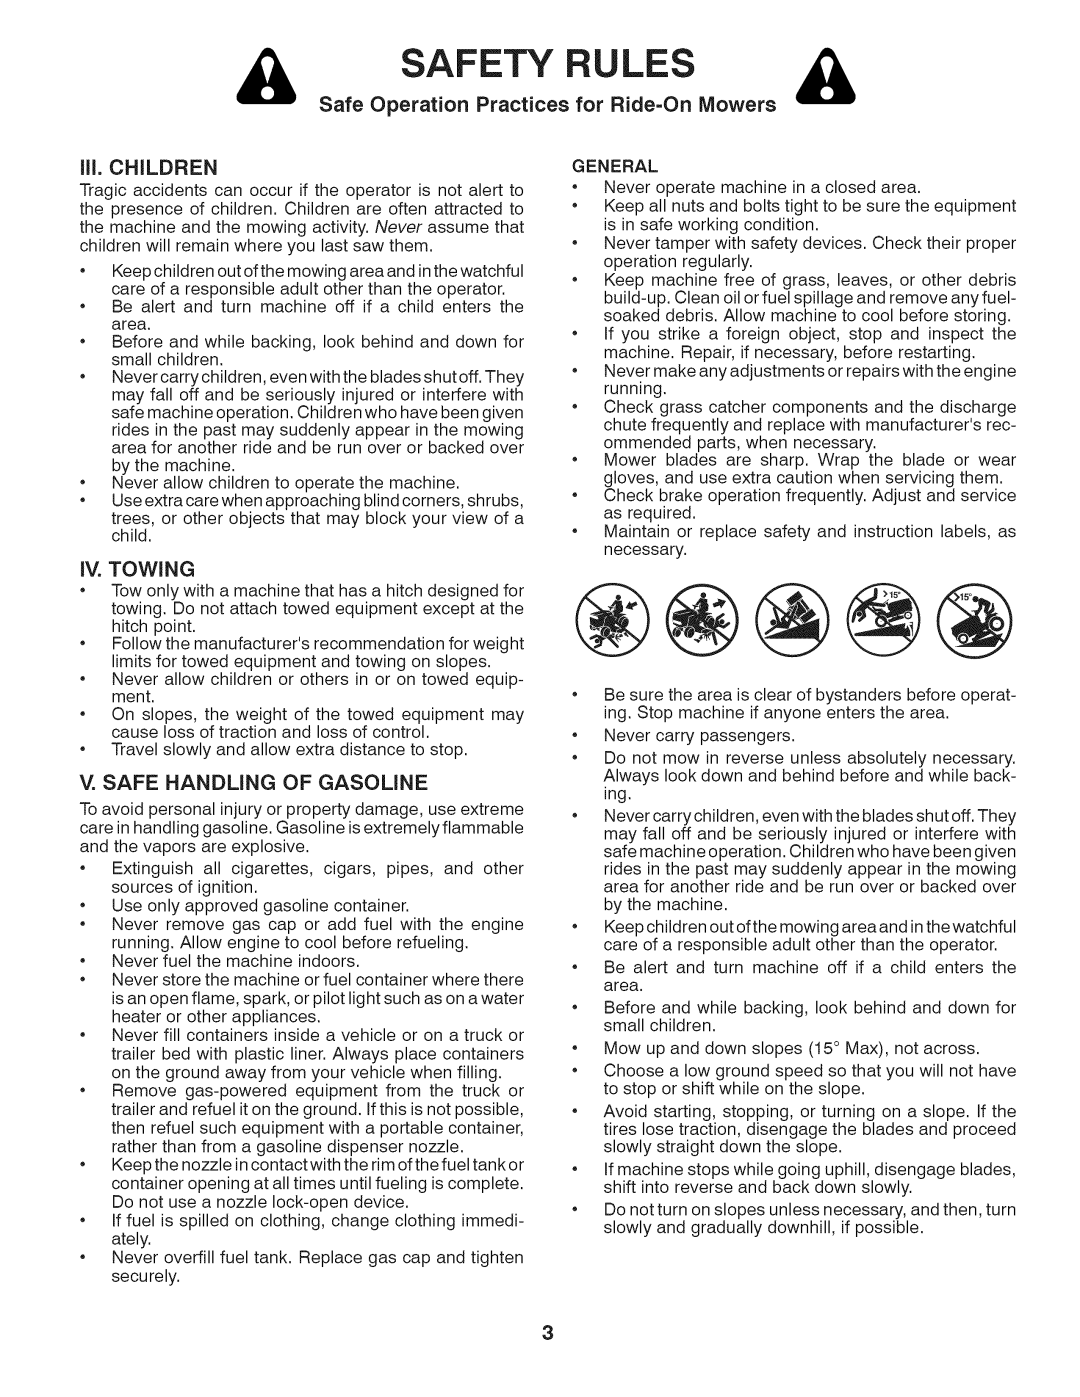 Husqvarna LTH18538 Safety, Rules, Safe Operation Practices, ill. CHILDREN, Iv. Towing, V. Safe Handling Of Gasoline 